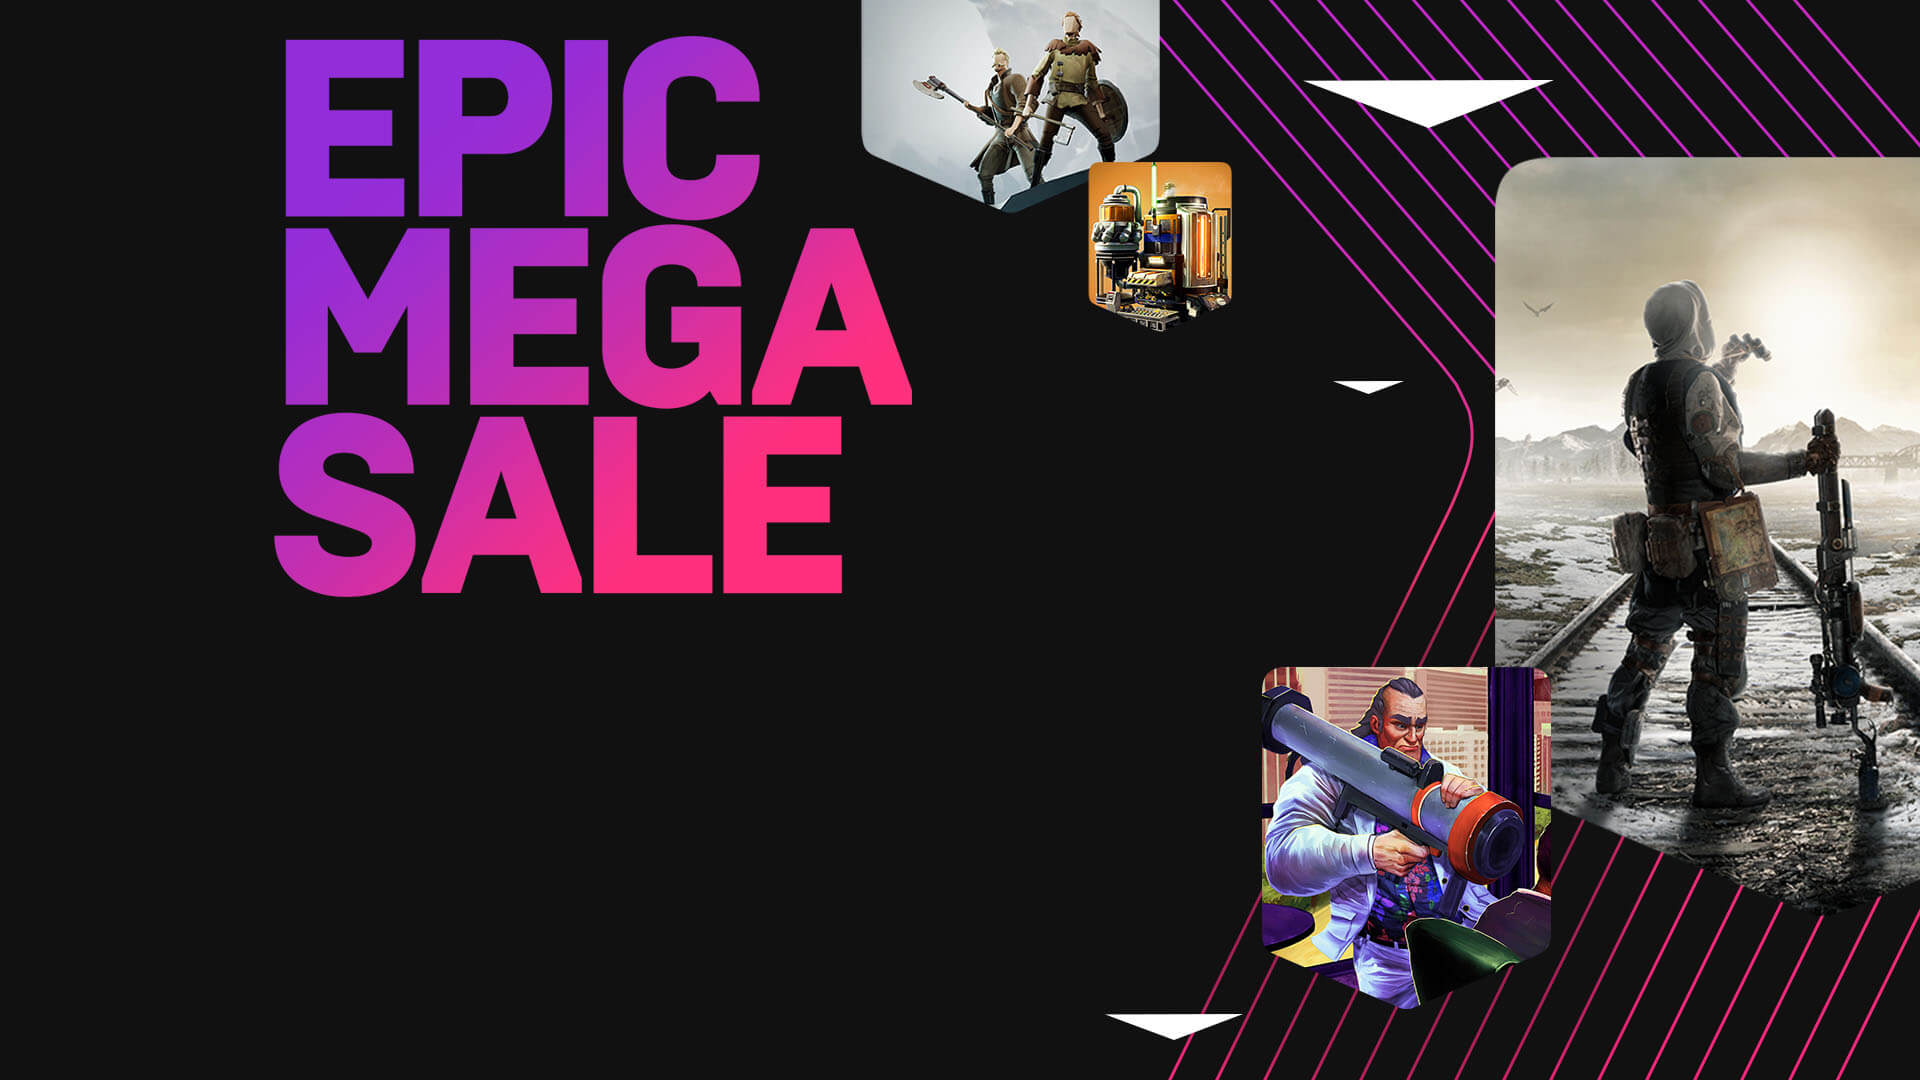 Epic Mega Sale Announced